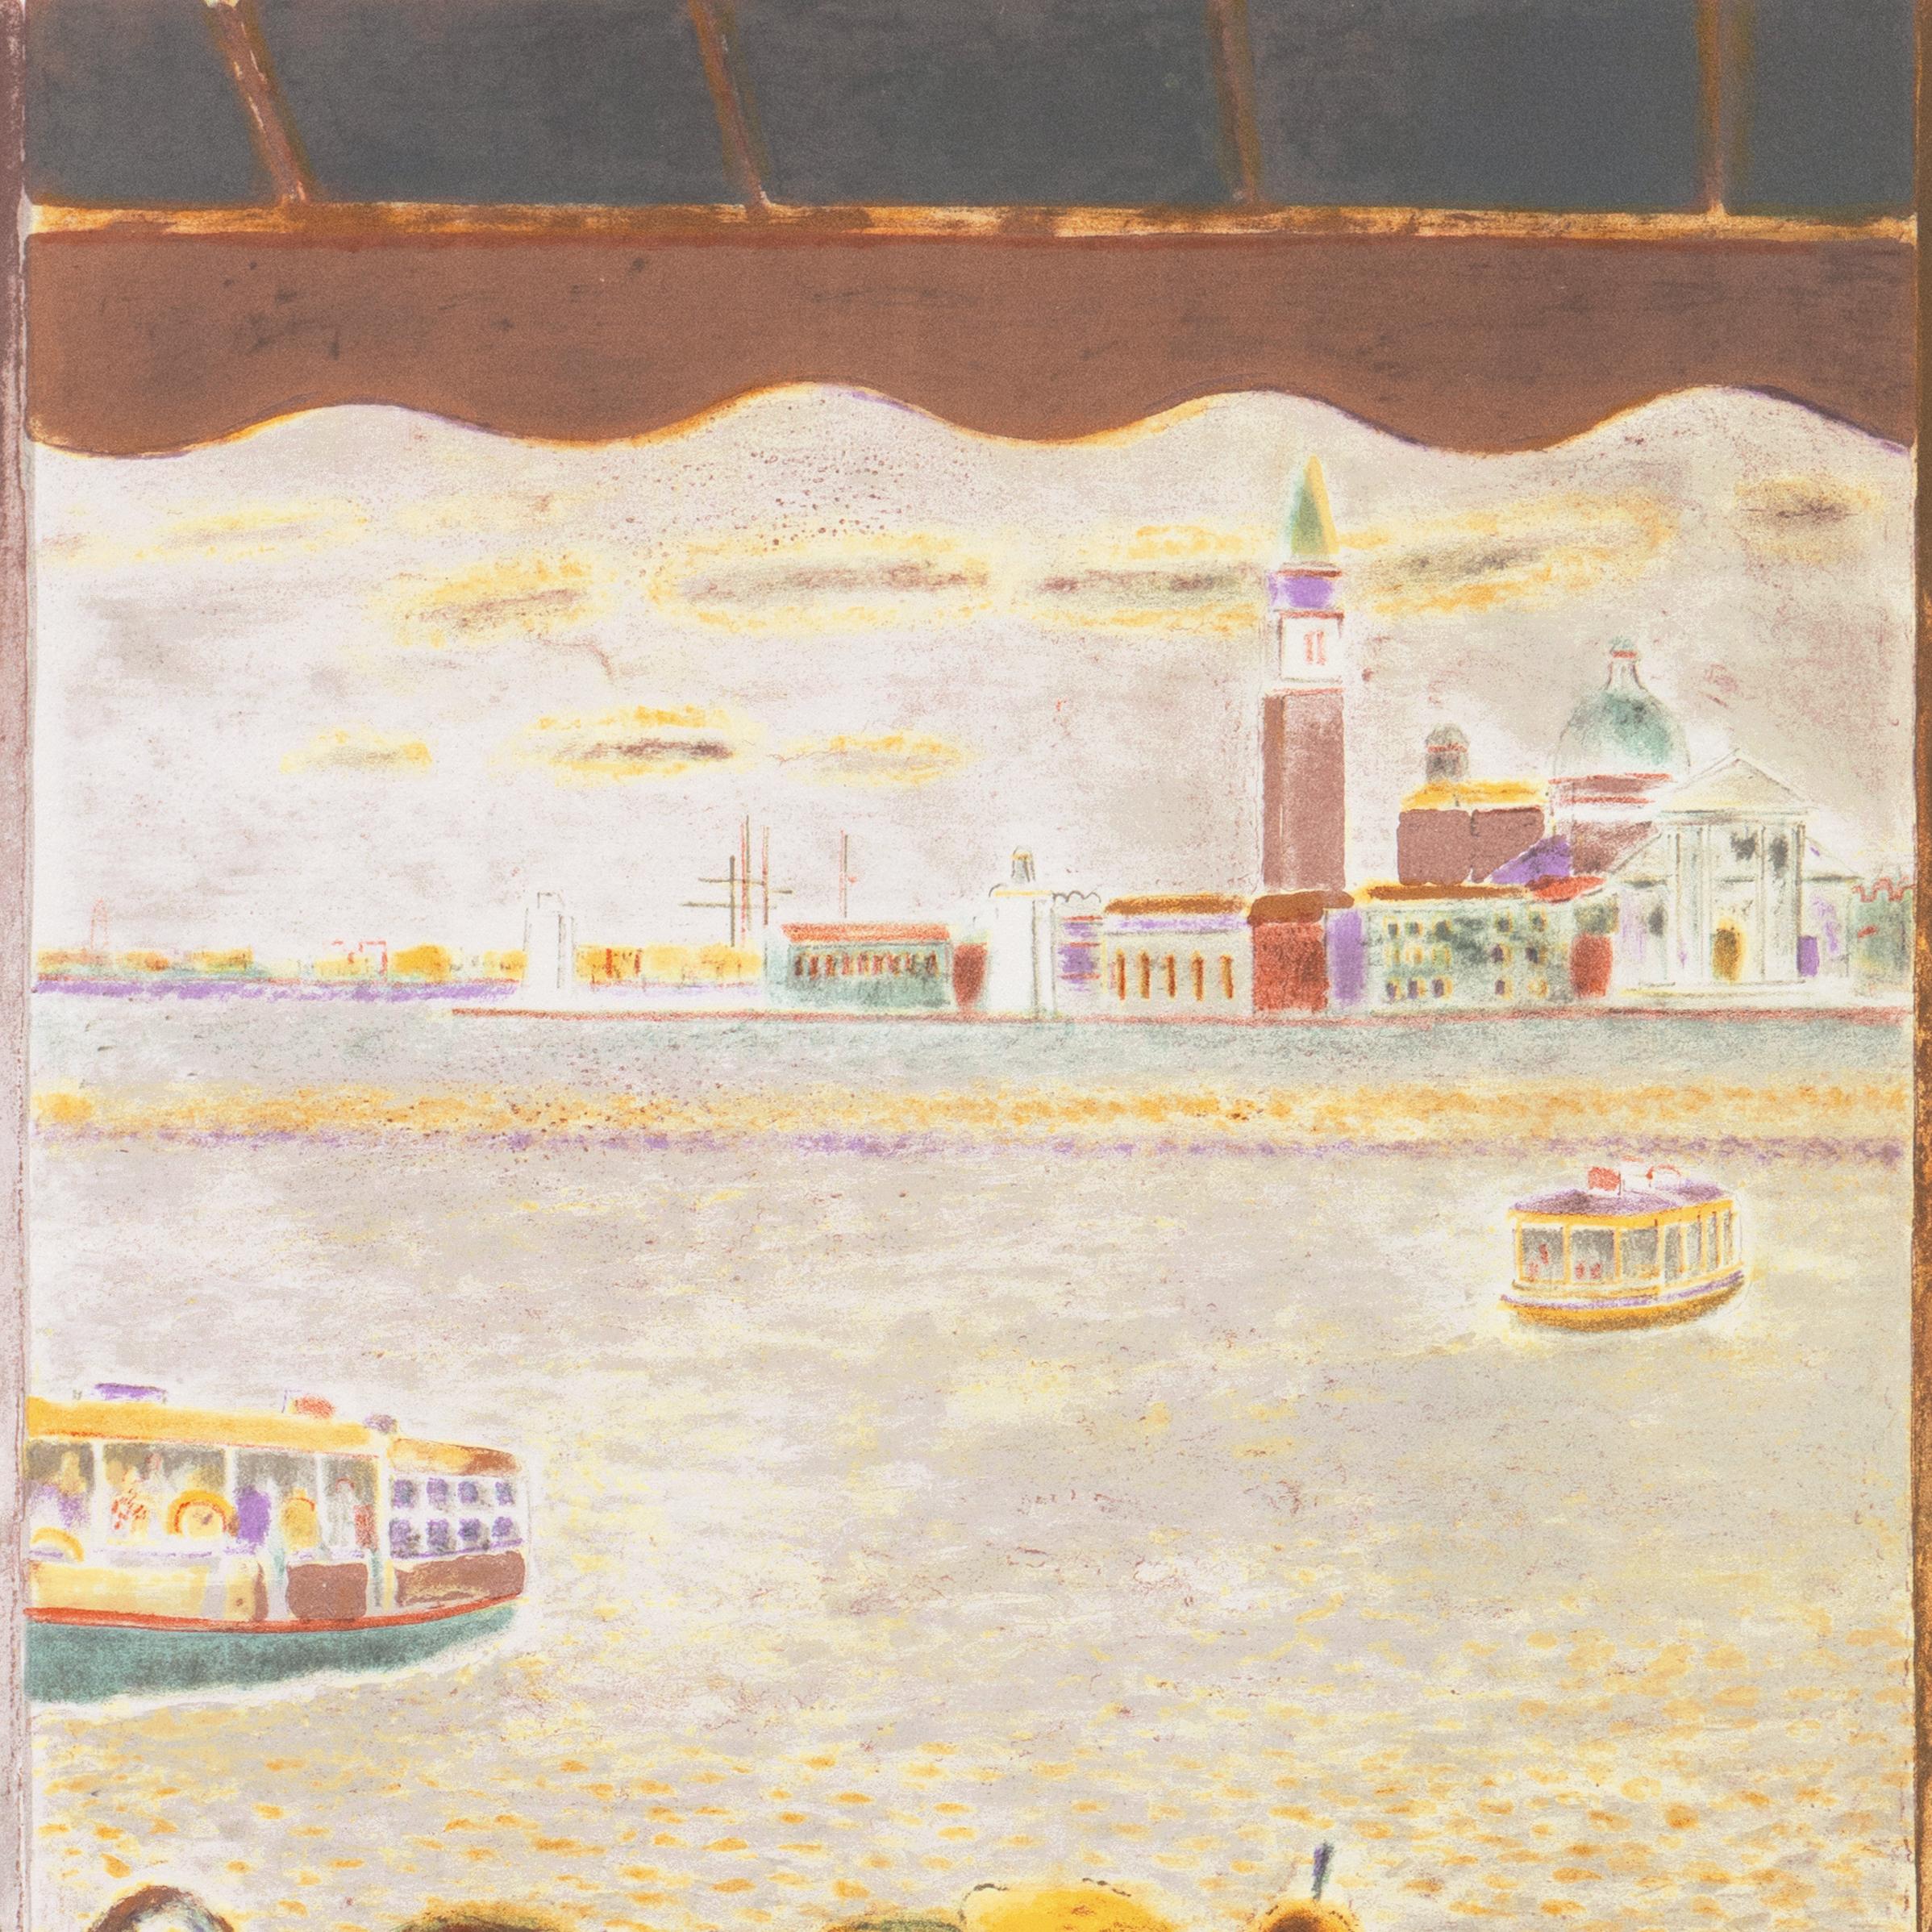 'View Across the Lagoon Venice', Academie Chaumiere, MAM Paris, Benezit - Post-Impressionist Print by Pierre Garcia Fons